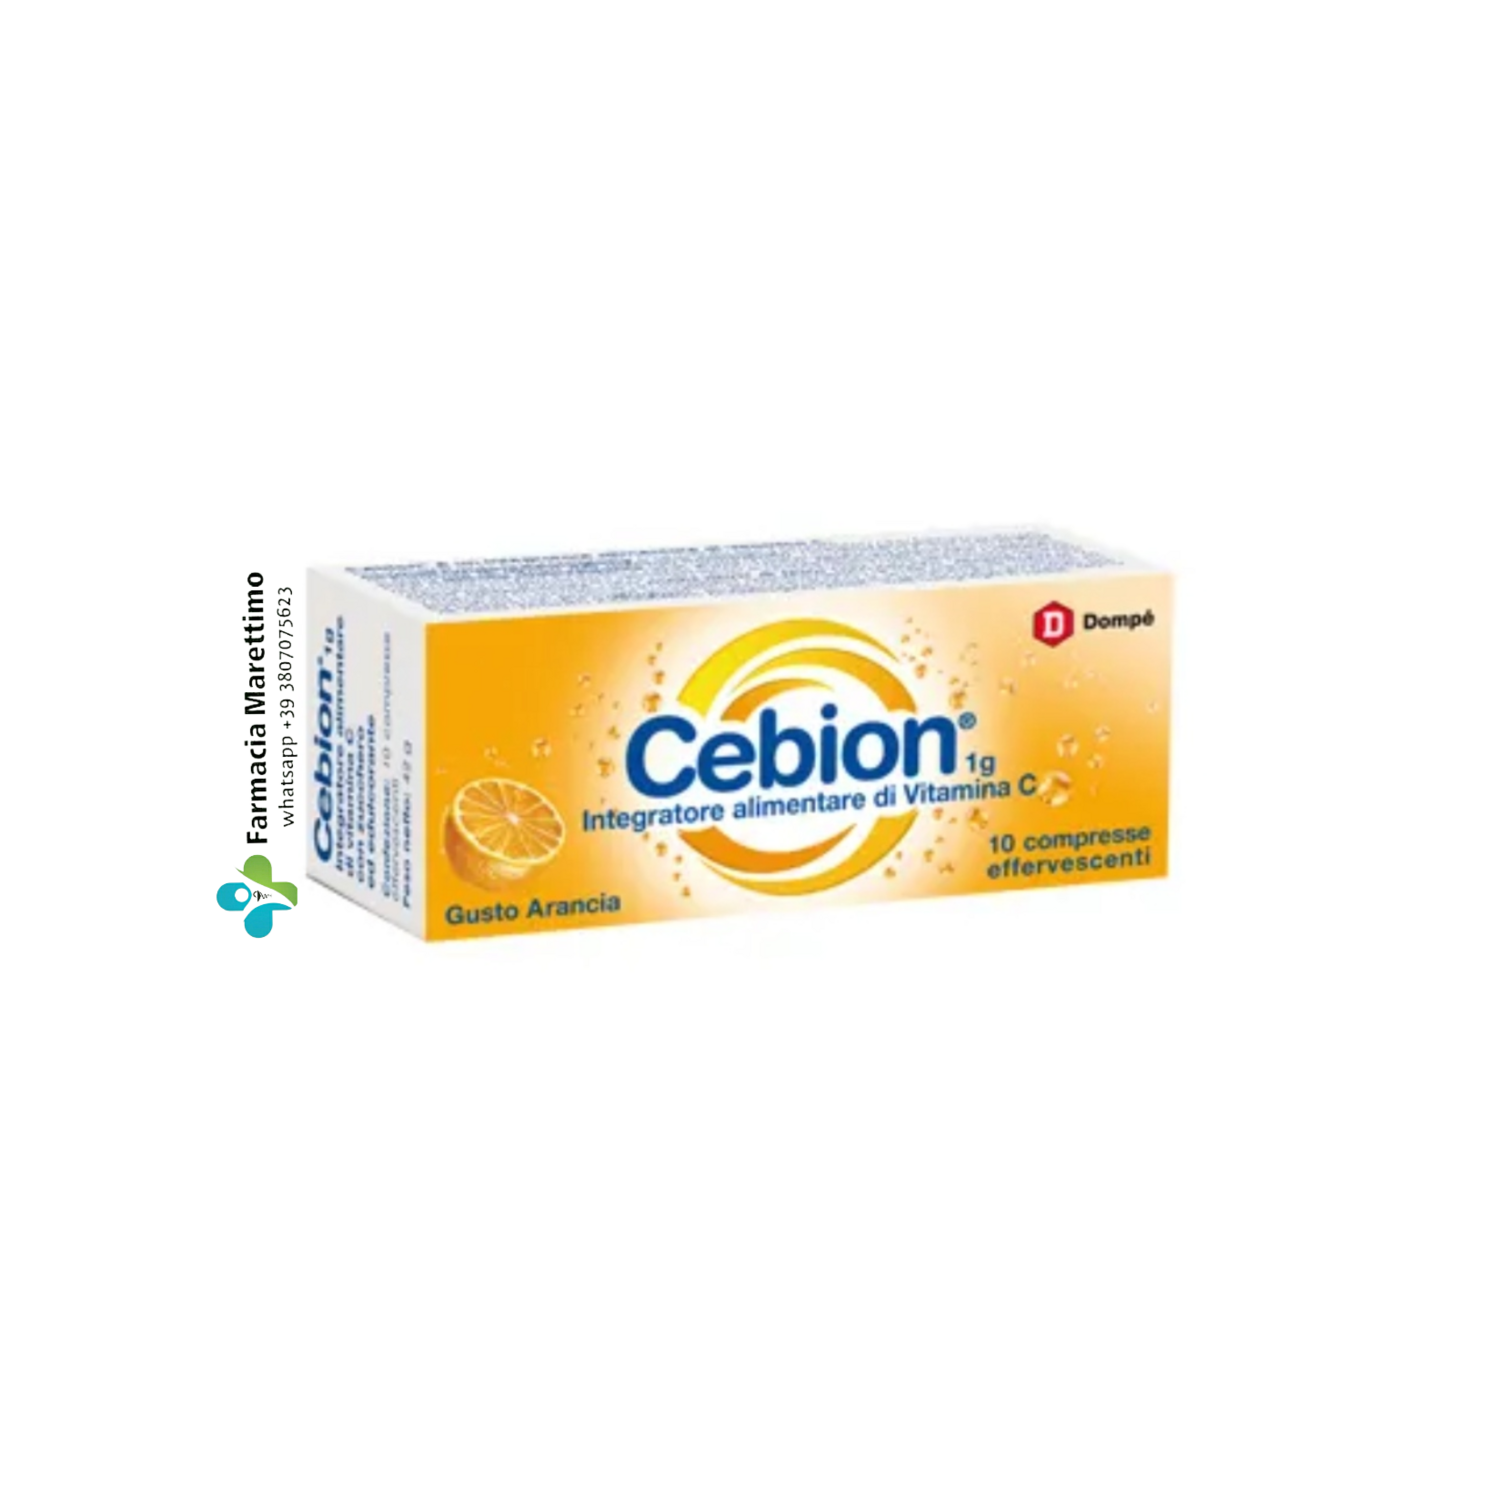 Cebion Effervescente Vitamina C gusto arancia (10 cpr)